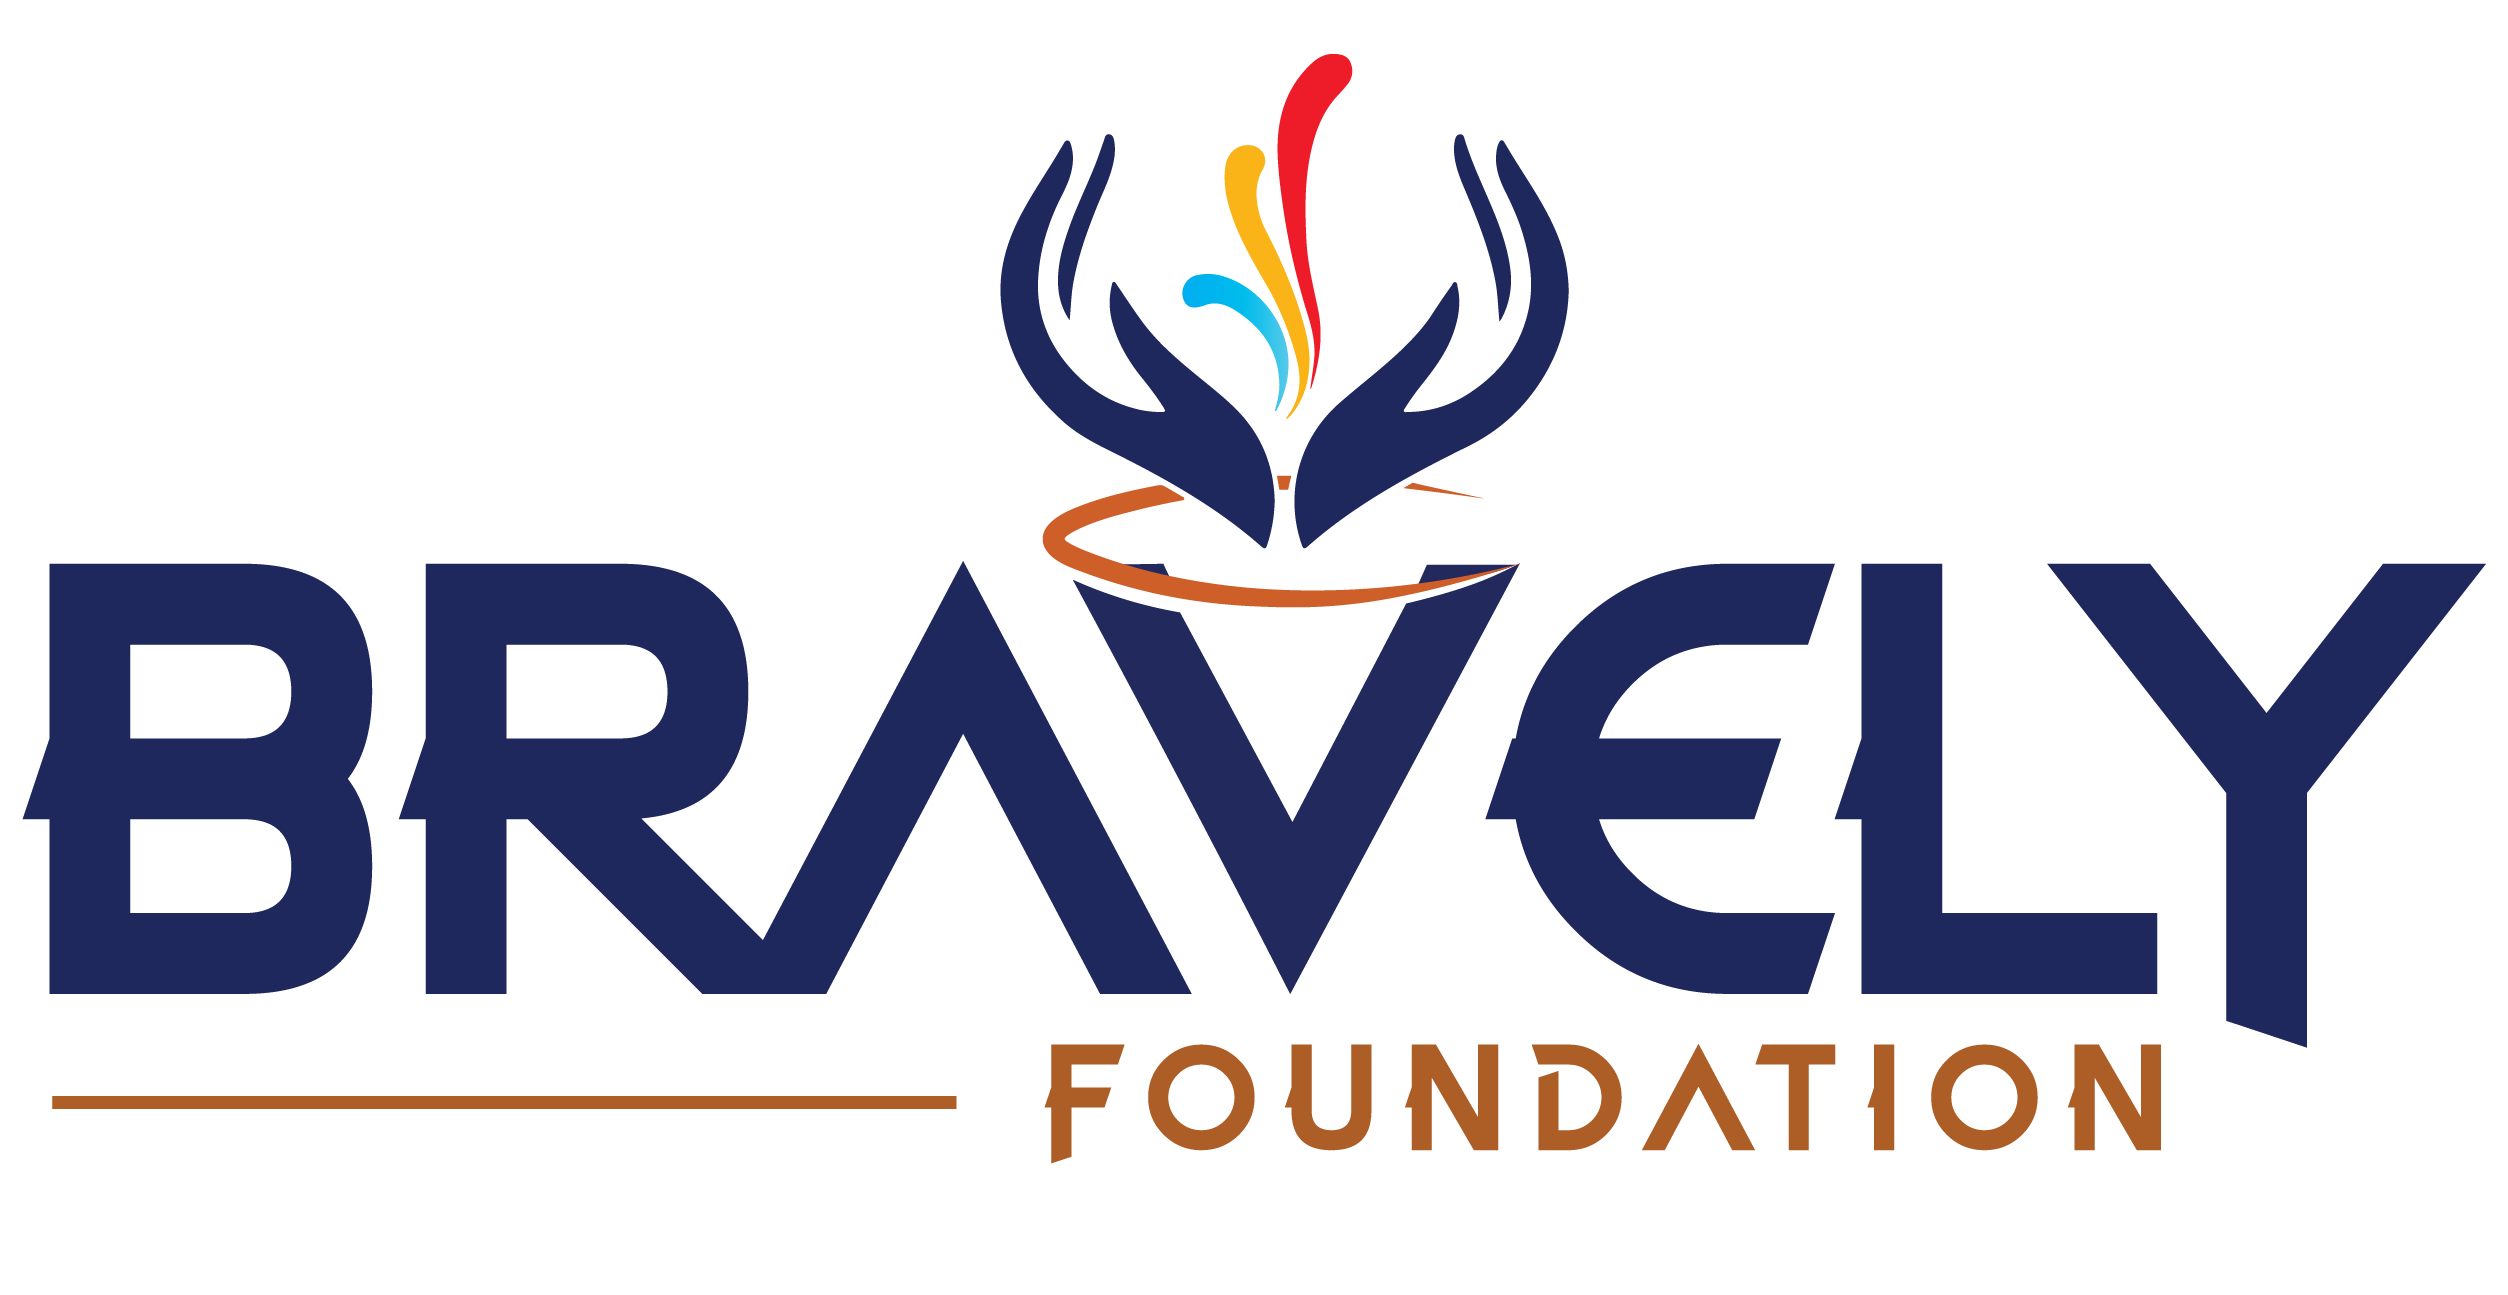 Bravely Foundation